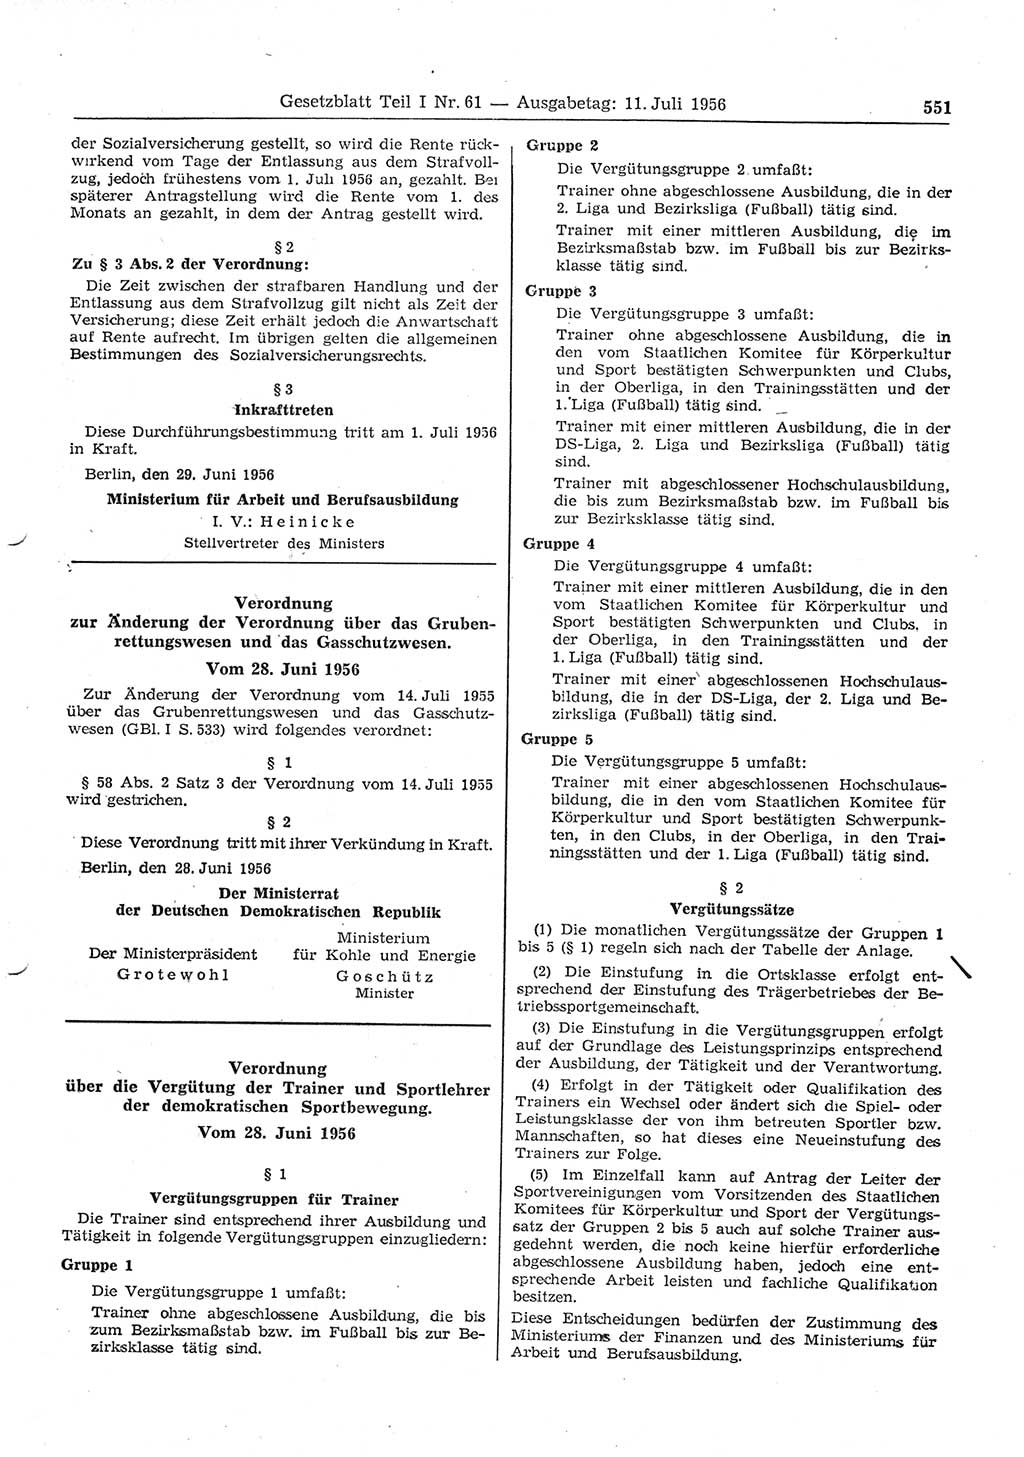 Gesetzblatt (GBl.) der Deutschen Demokratischen Republik (DDR) Teil Ⅰ 1956, Seite 551 (GBl. DDR Ⅰ 1956, S. 551)